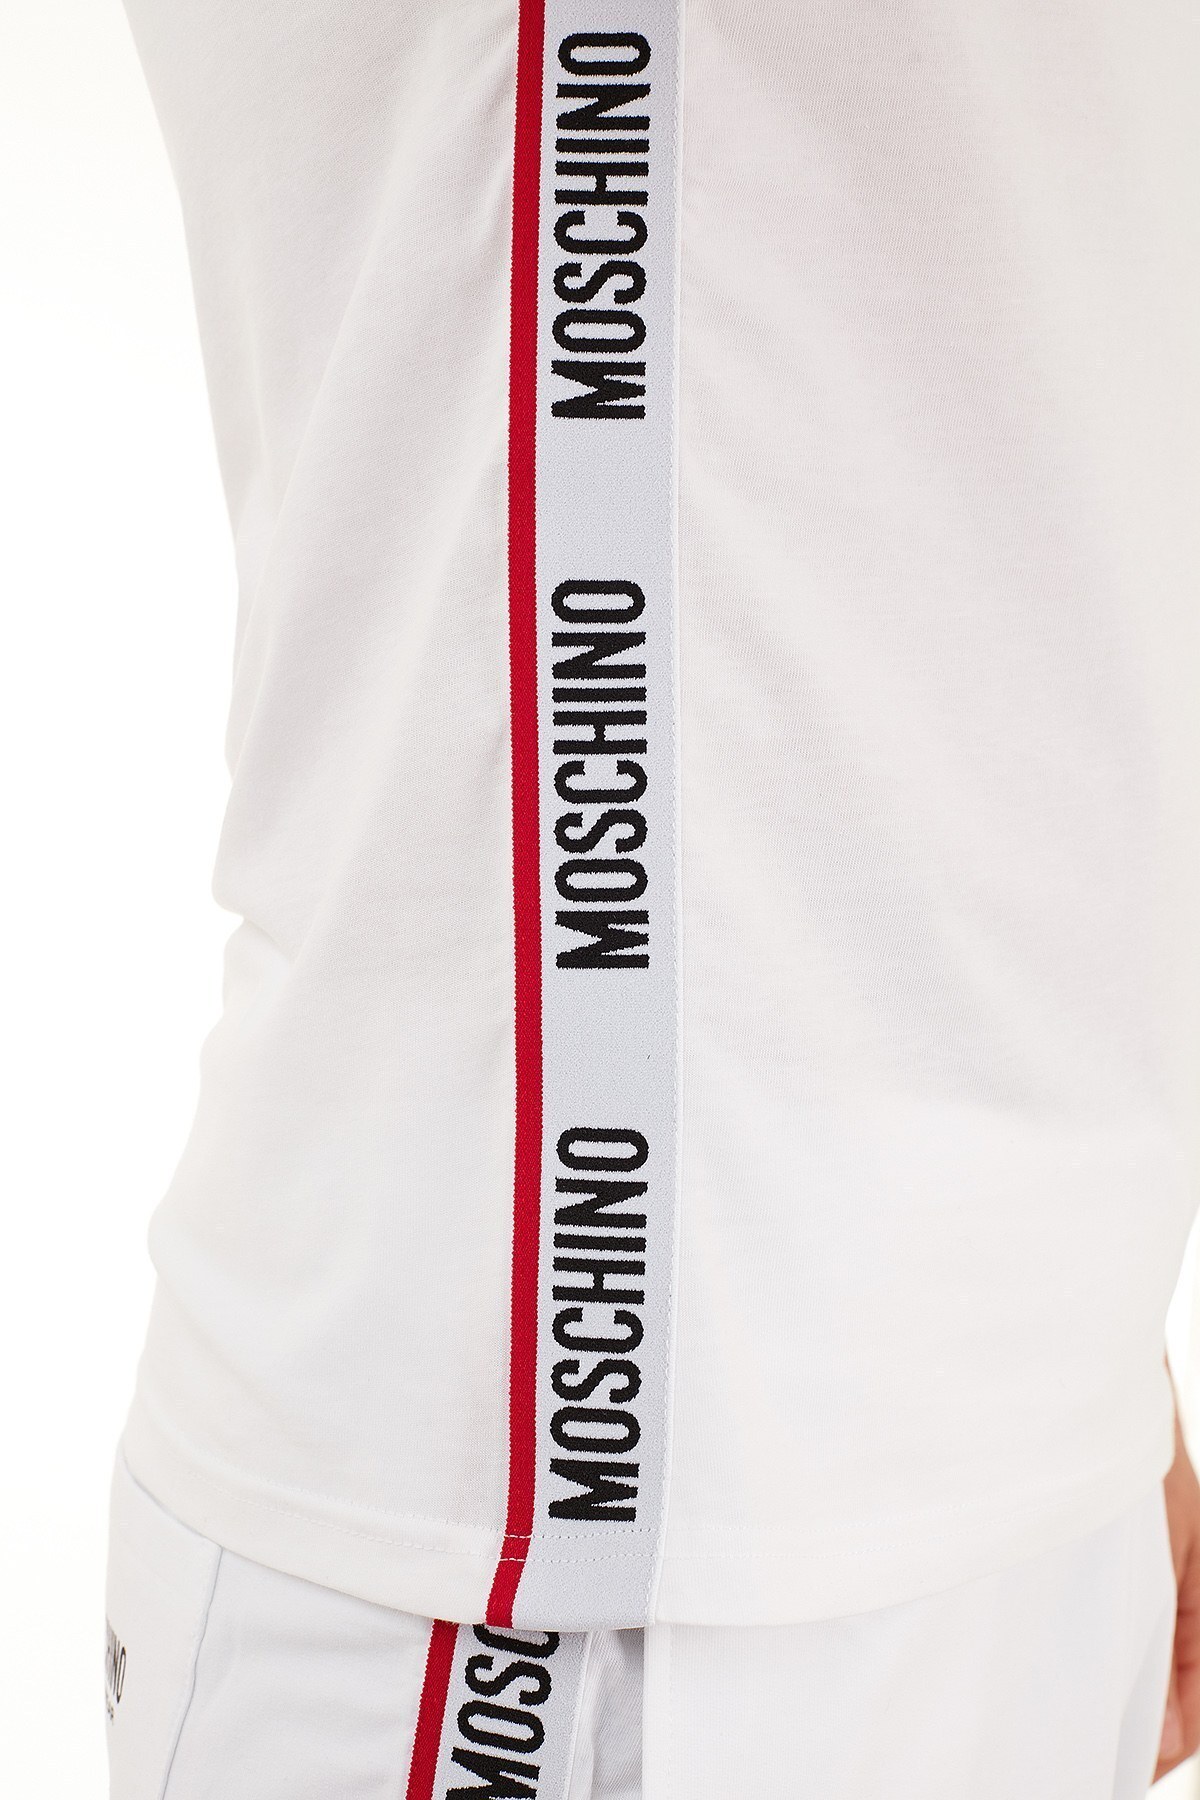 Moschino Logo Bantlı Bisiklet Yaka % 100 Pamuk Erkek T Shirt A1913 8108 0001 BEYAZ